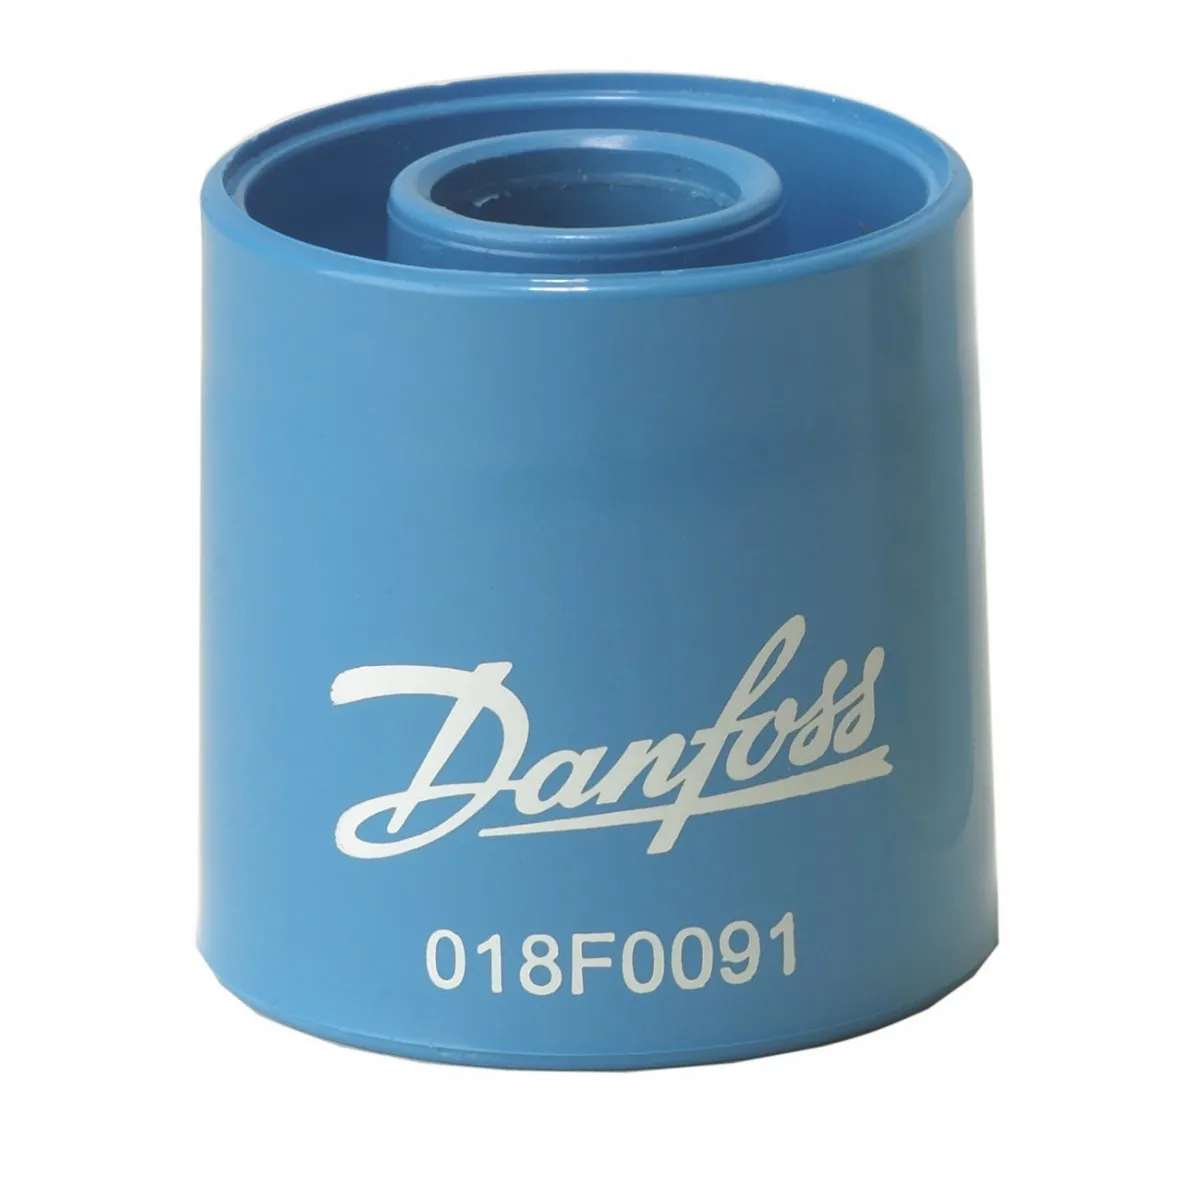 018f0091 Danfoss doimiy magnit solenoid klapanlarni tekshirish uchun#1